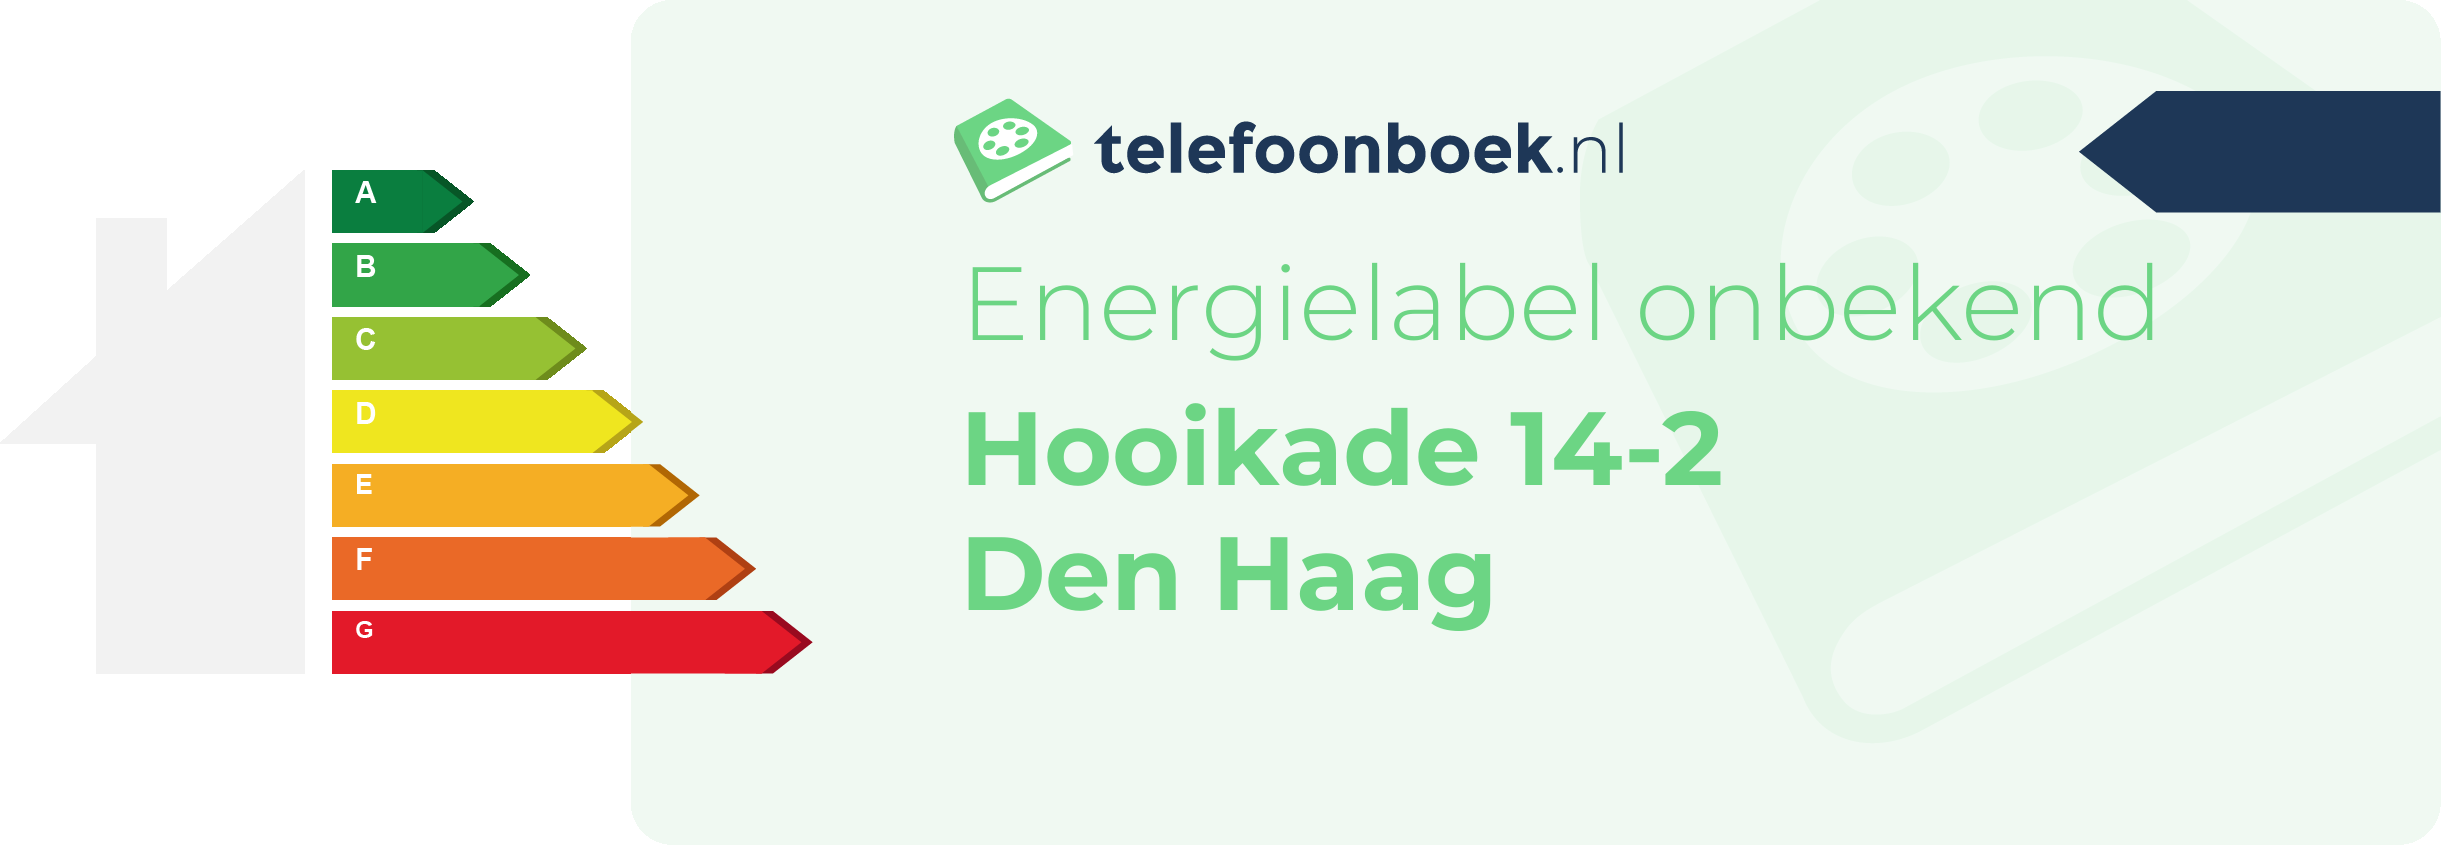 Energielabel Hooikade 14-2 Den Haag